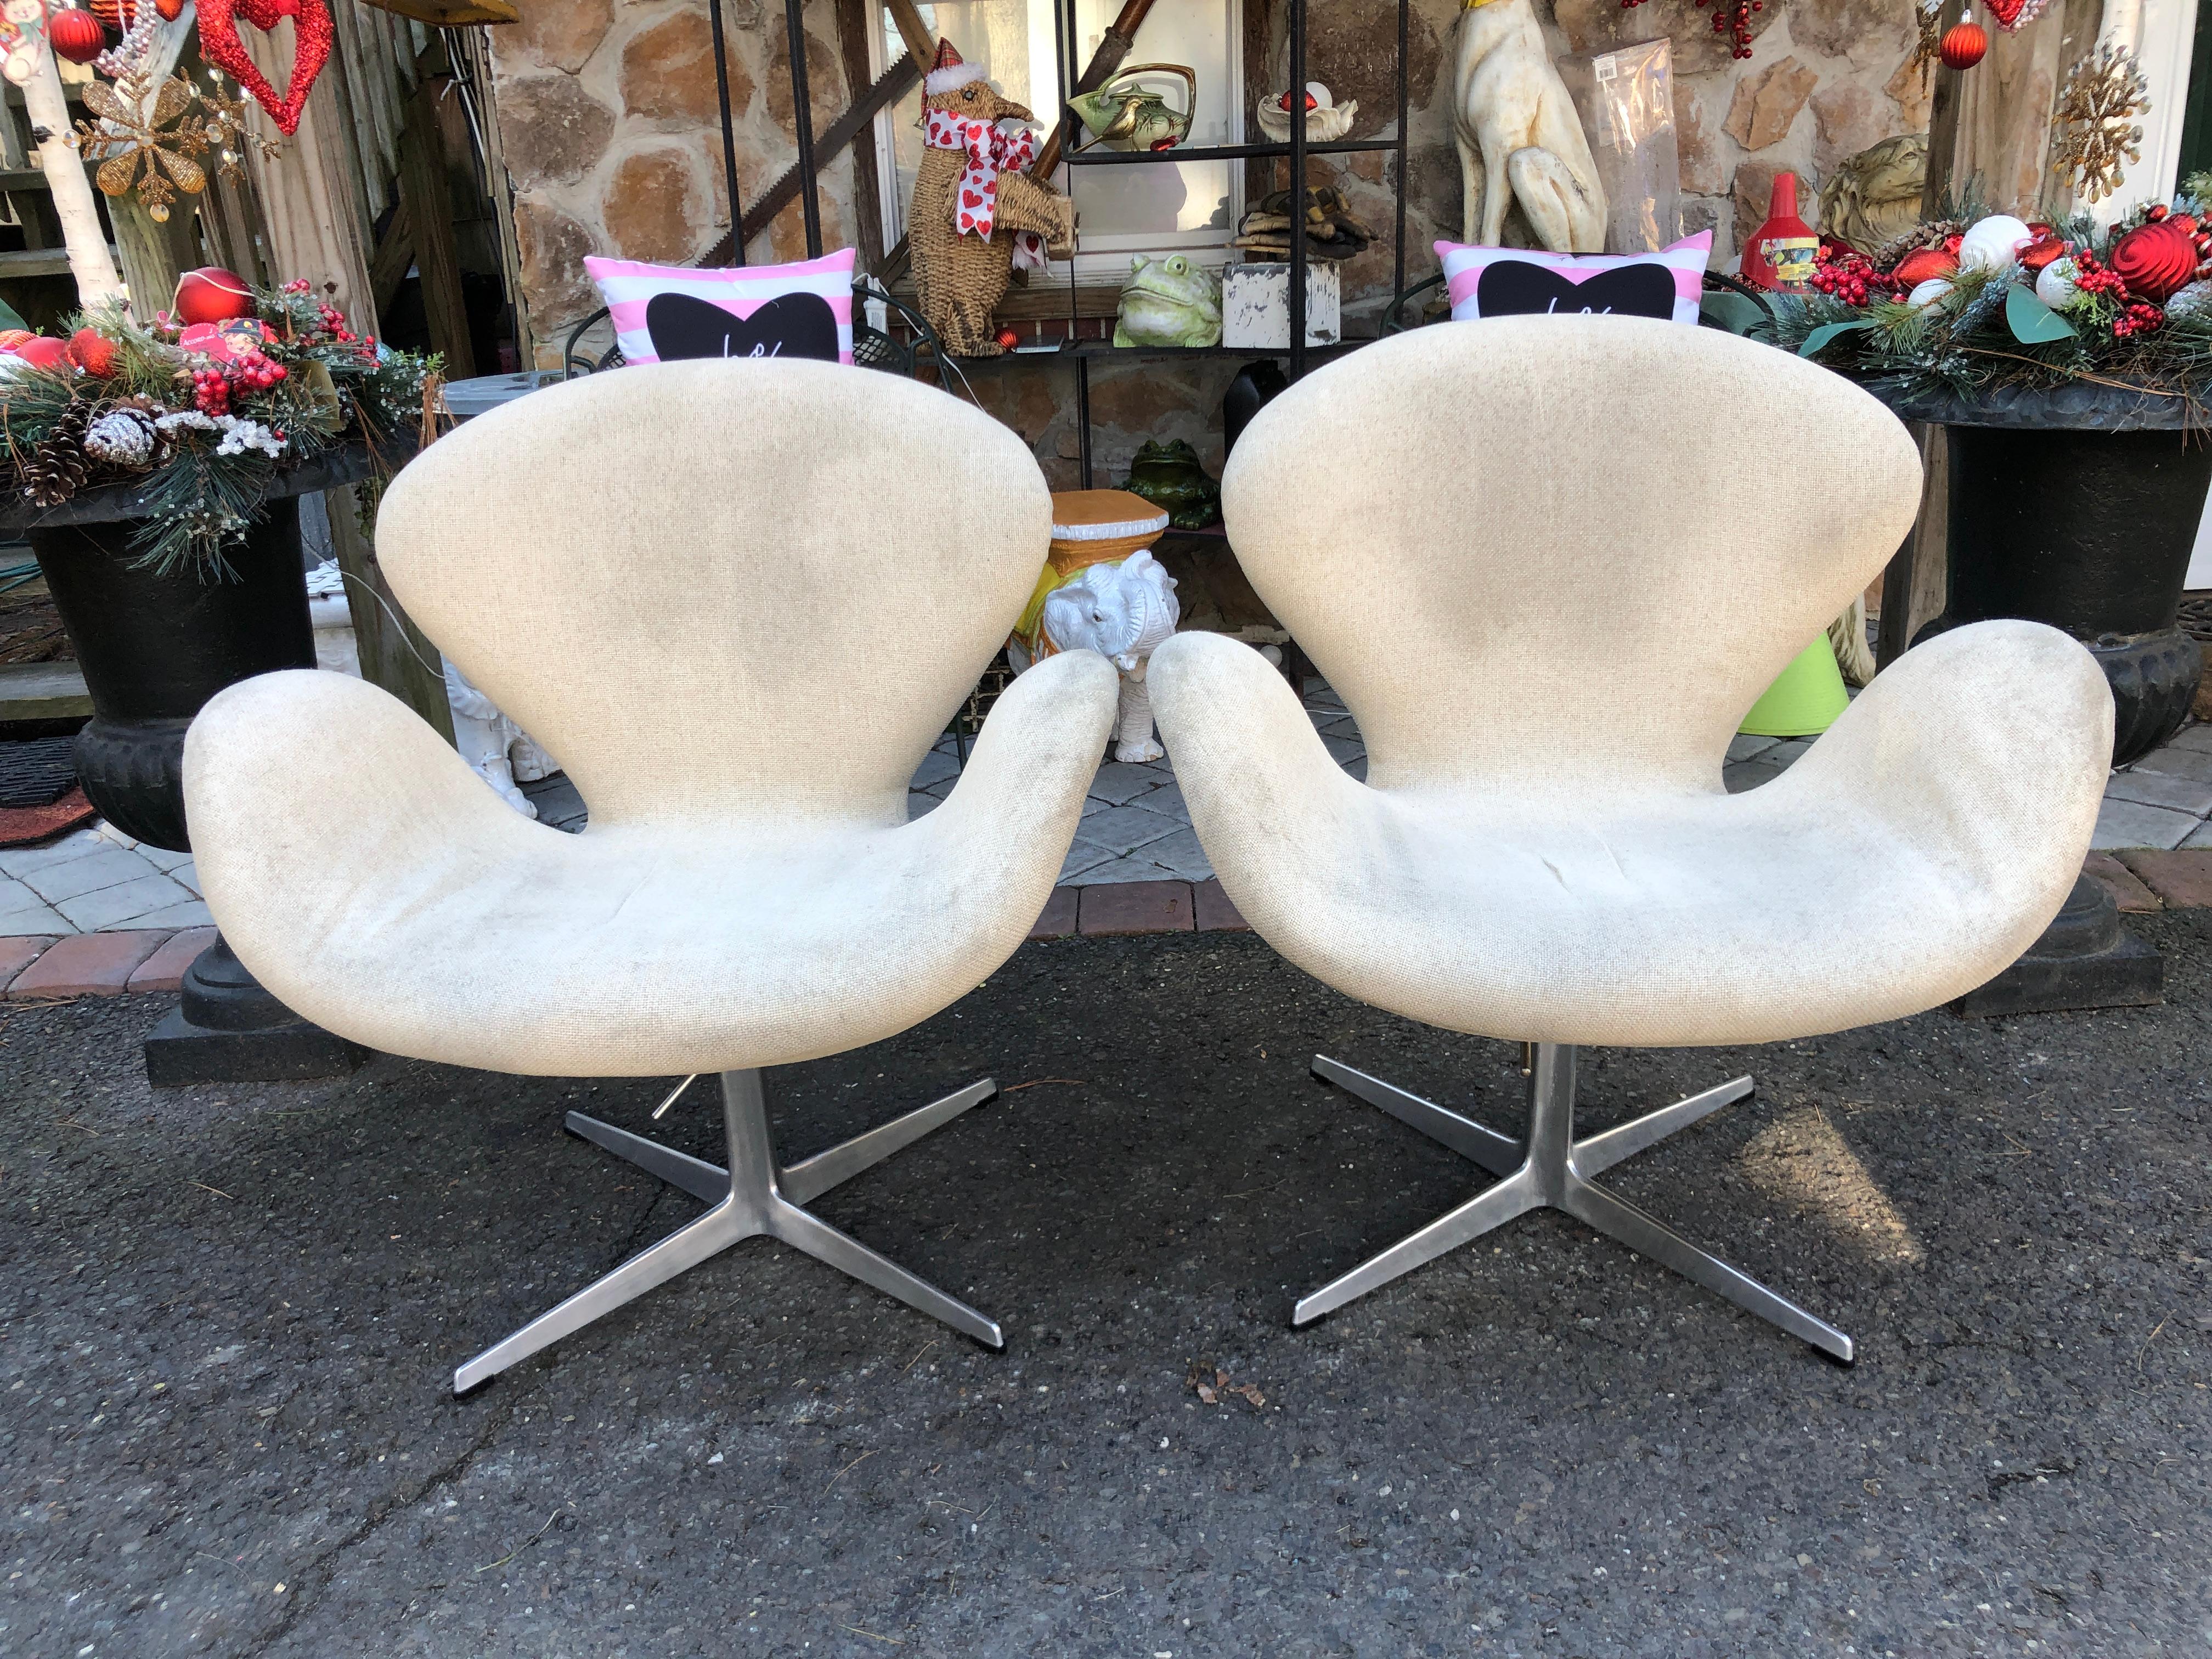 Hübsches Paar Schwan-Stühle aus den 1960er Jahren, entworfen von Arne Jacobsen für Fritz Hansen. Mit schwenkbarem Vier-Sterne-Fußkreuz aus gebürstetem Aluminium - alle Gleiter sind vorhanden. Diese Version des Schwanenstuhls verfügt über die seltene